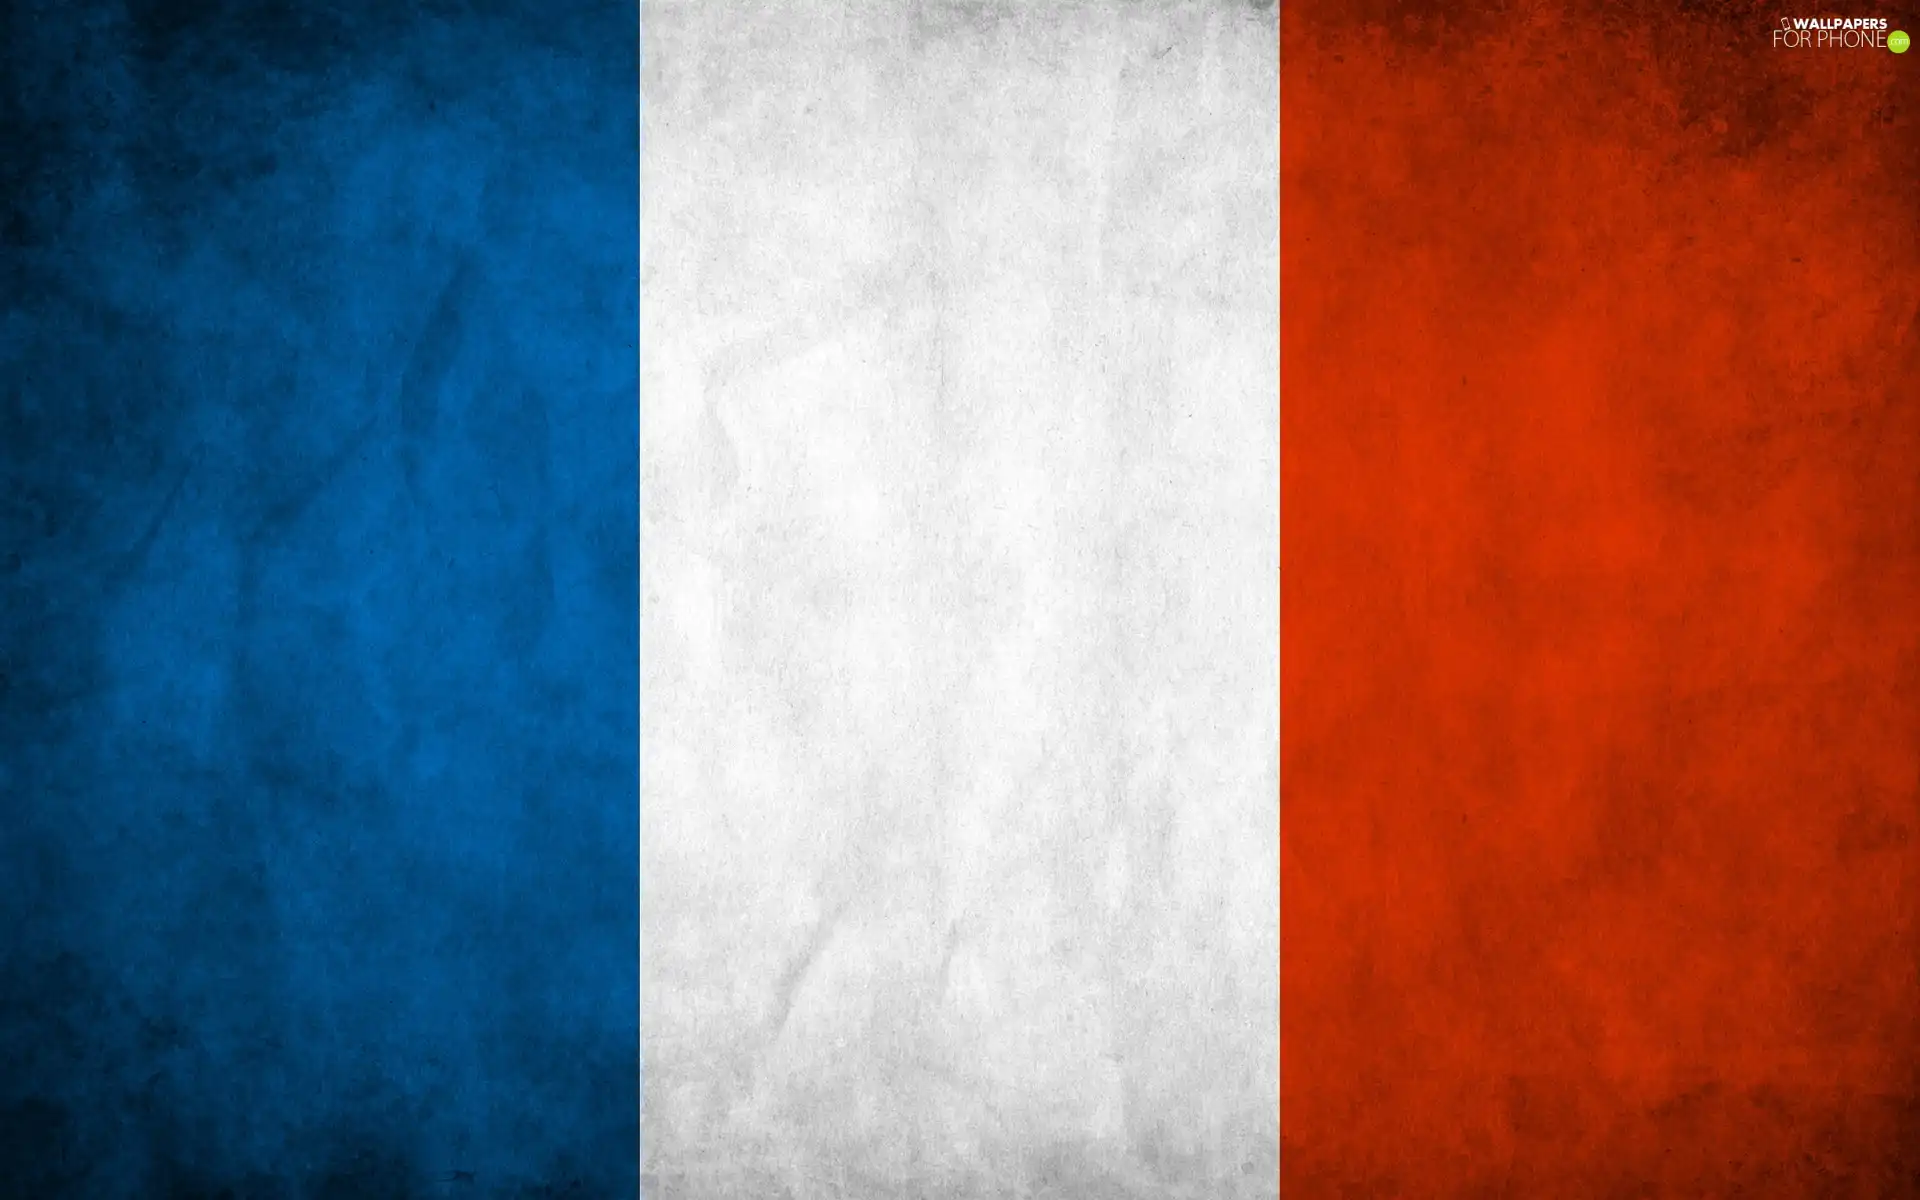 France, flag, Member